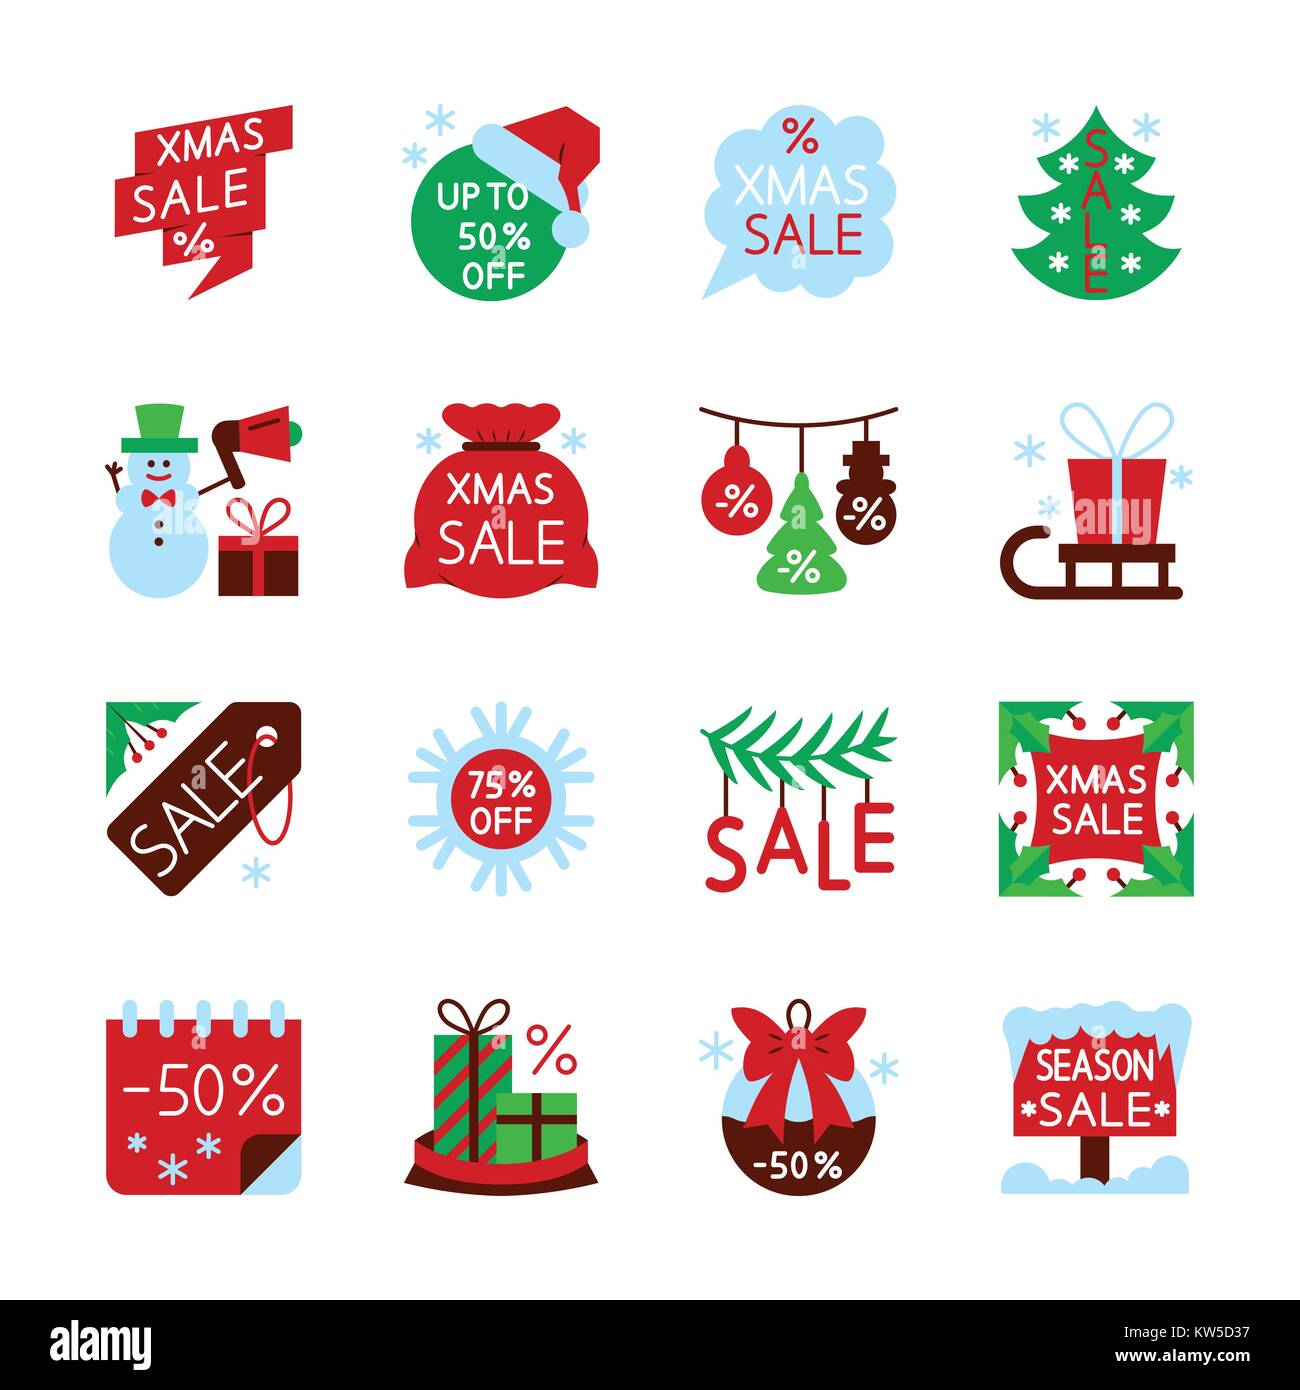 Bunte Jahreszeit Weihnachten Verkauf Icon Set. Neues Jahr Flat Style Spiel Konzept Sammlung Xmas Farbe Web, Karten, Drucken, Büro, Geschäft, Banner, Aufkleber Stock Vektor